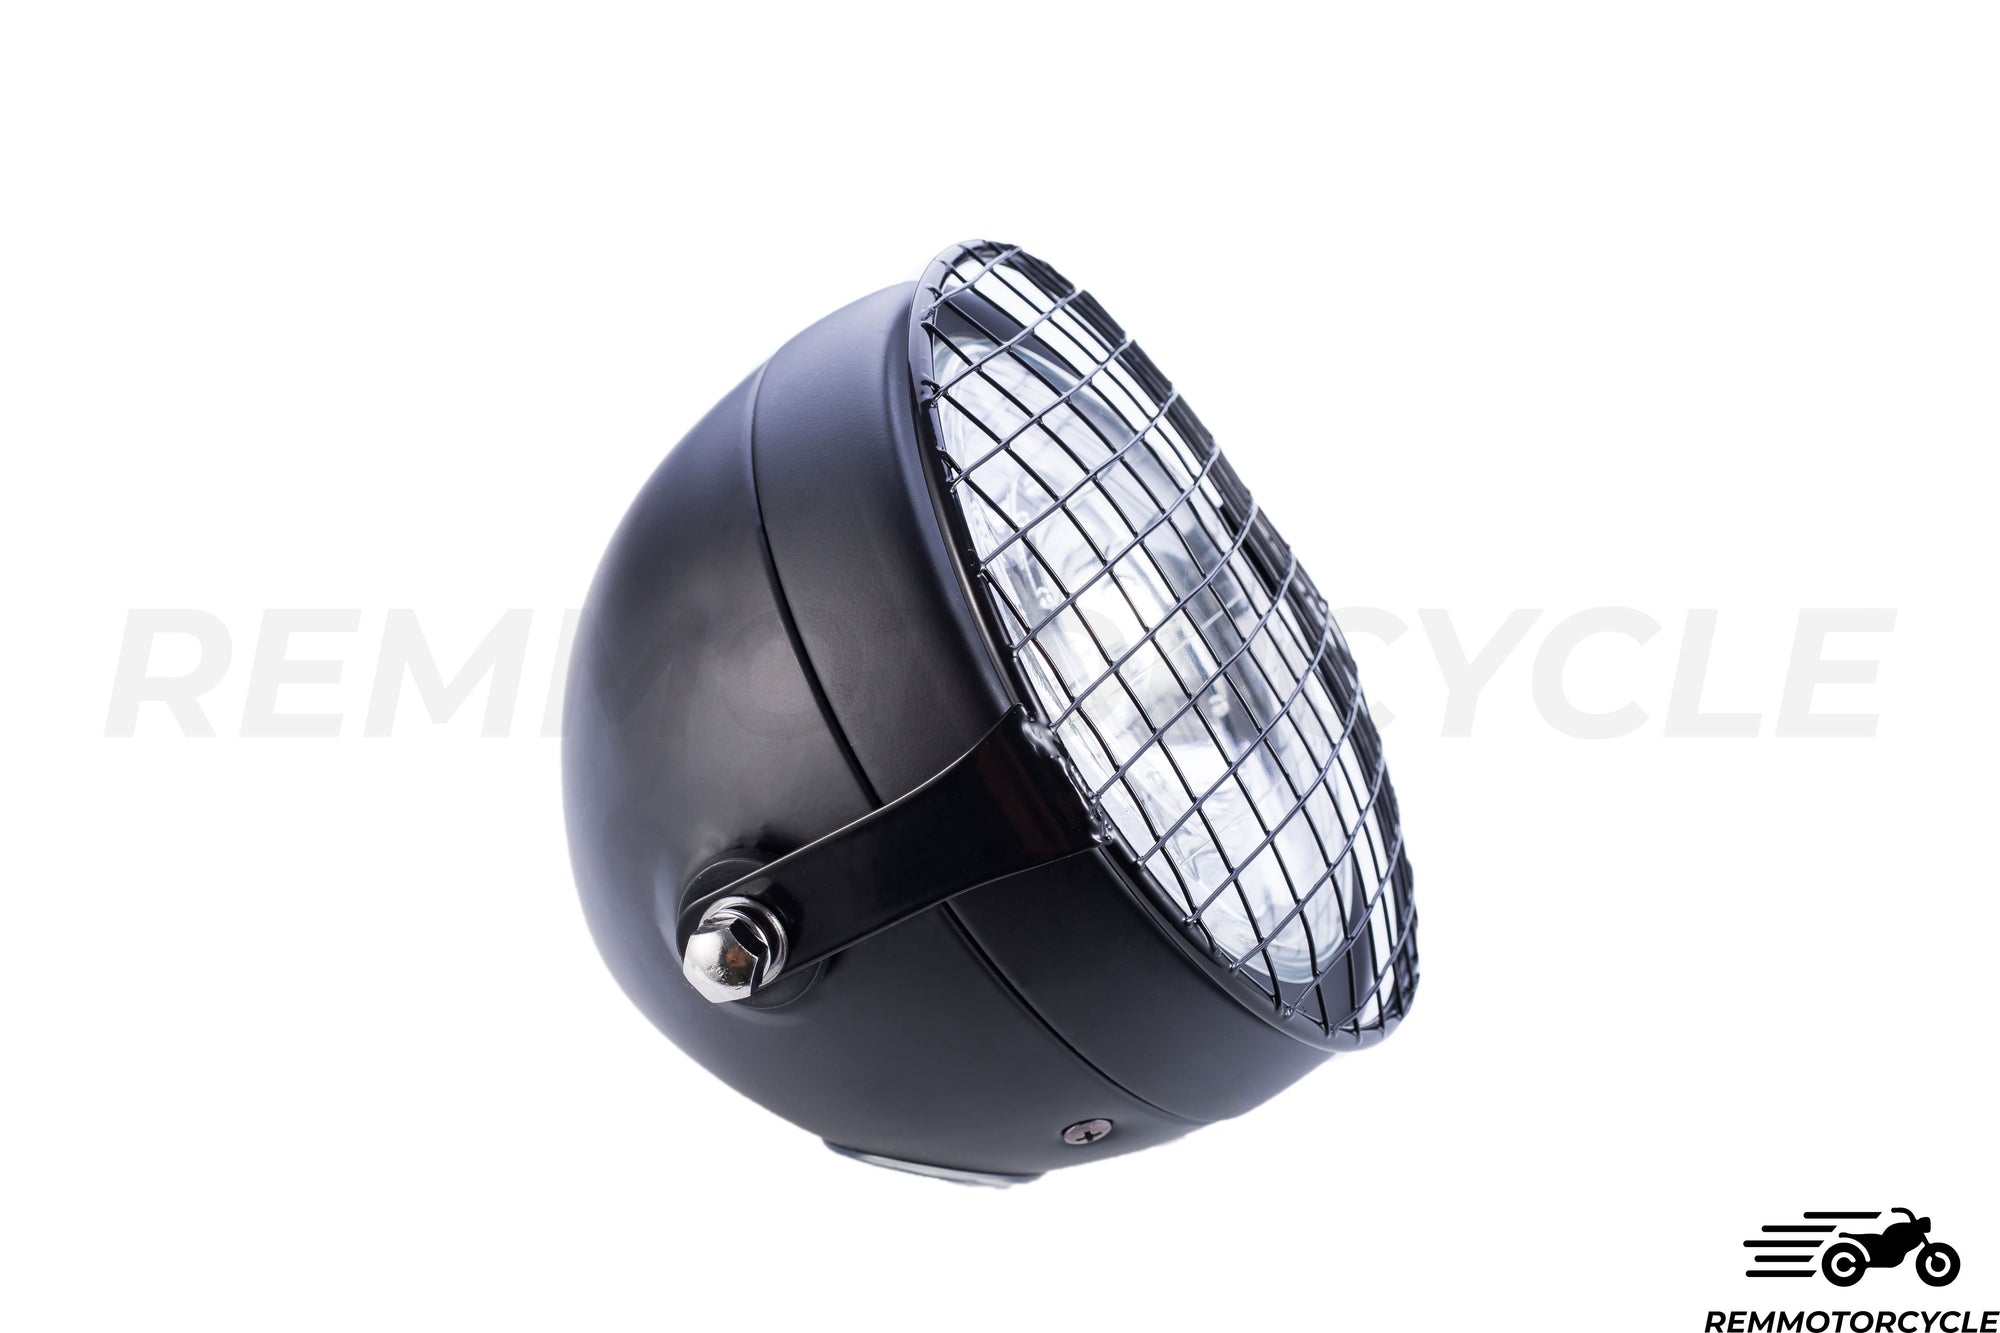 LED -koplamp van 16,5 cm met rasters en halo